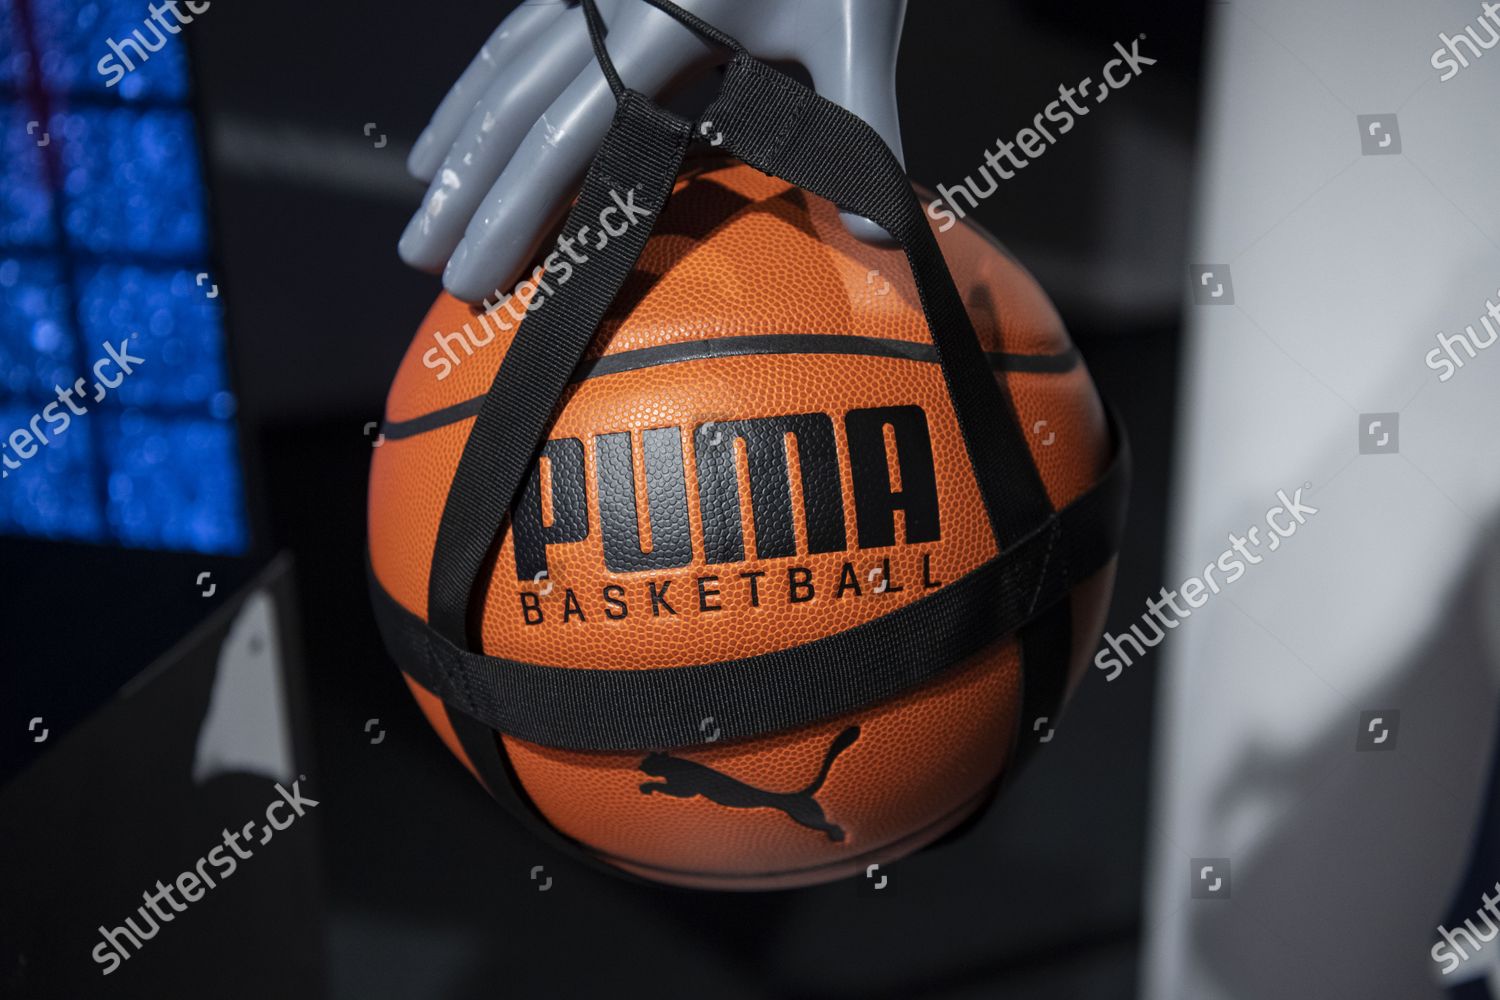 Puma basketball shown during annual 